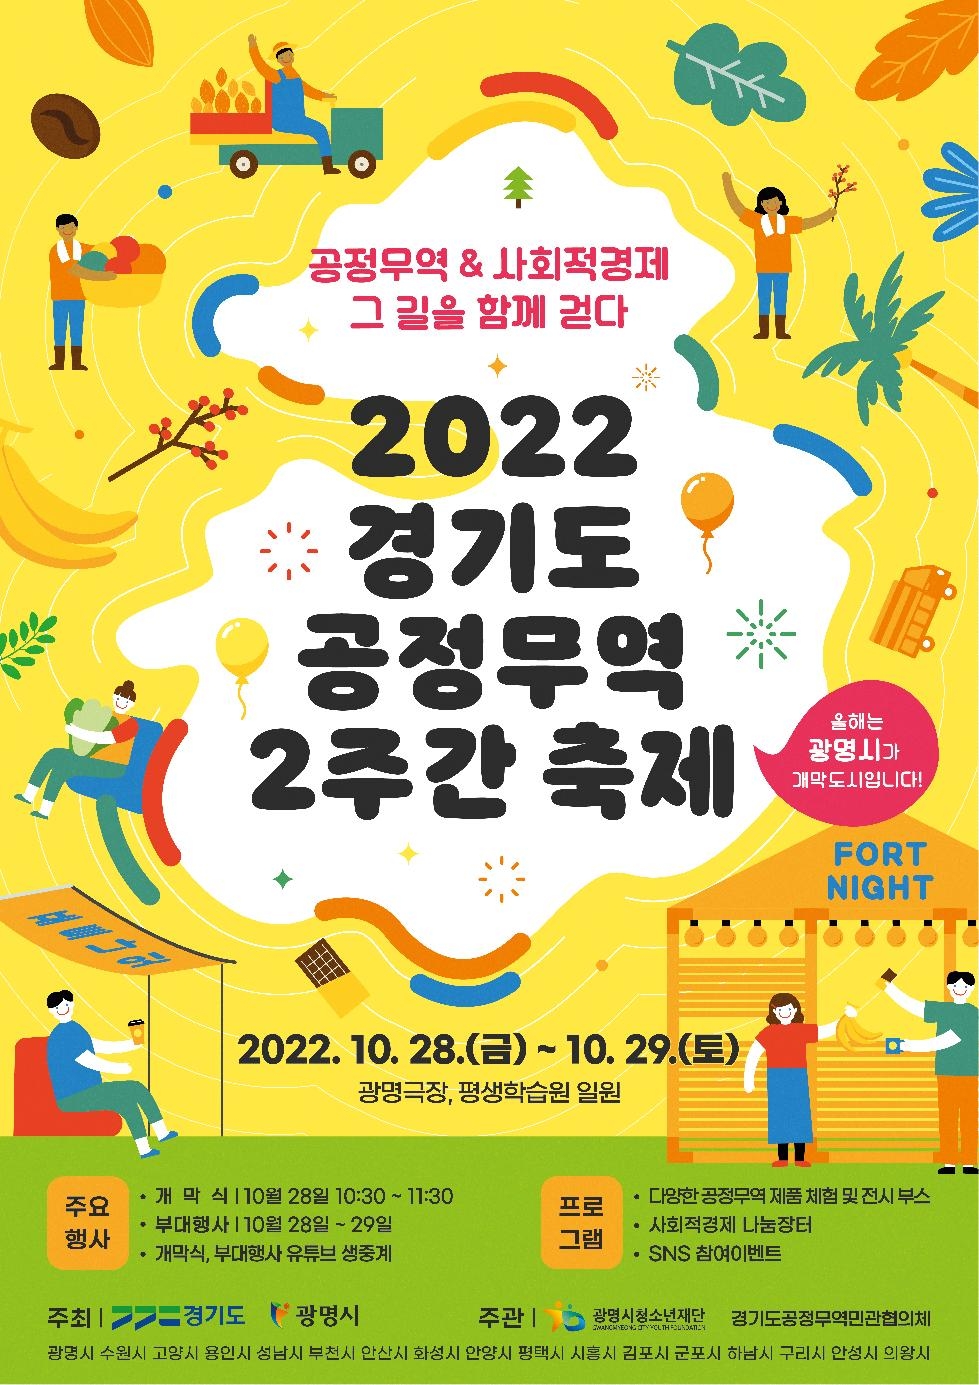 경기도,‘2022년 경기도 공정무역 2주간 축제(포트나잇)’ 28일 개막